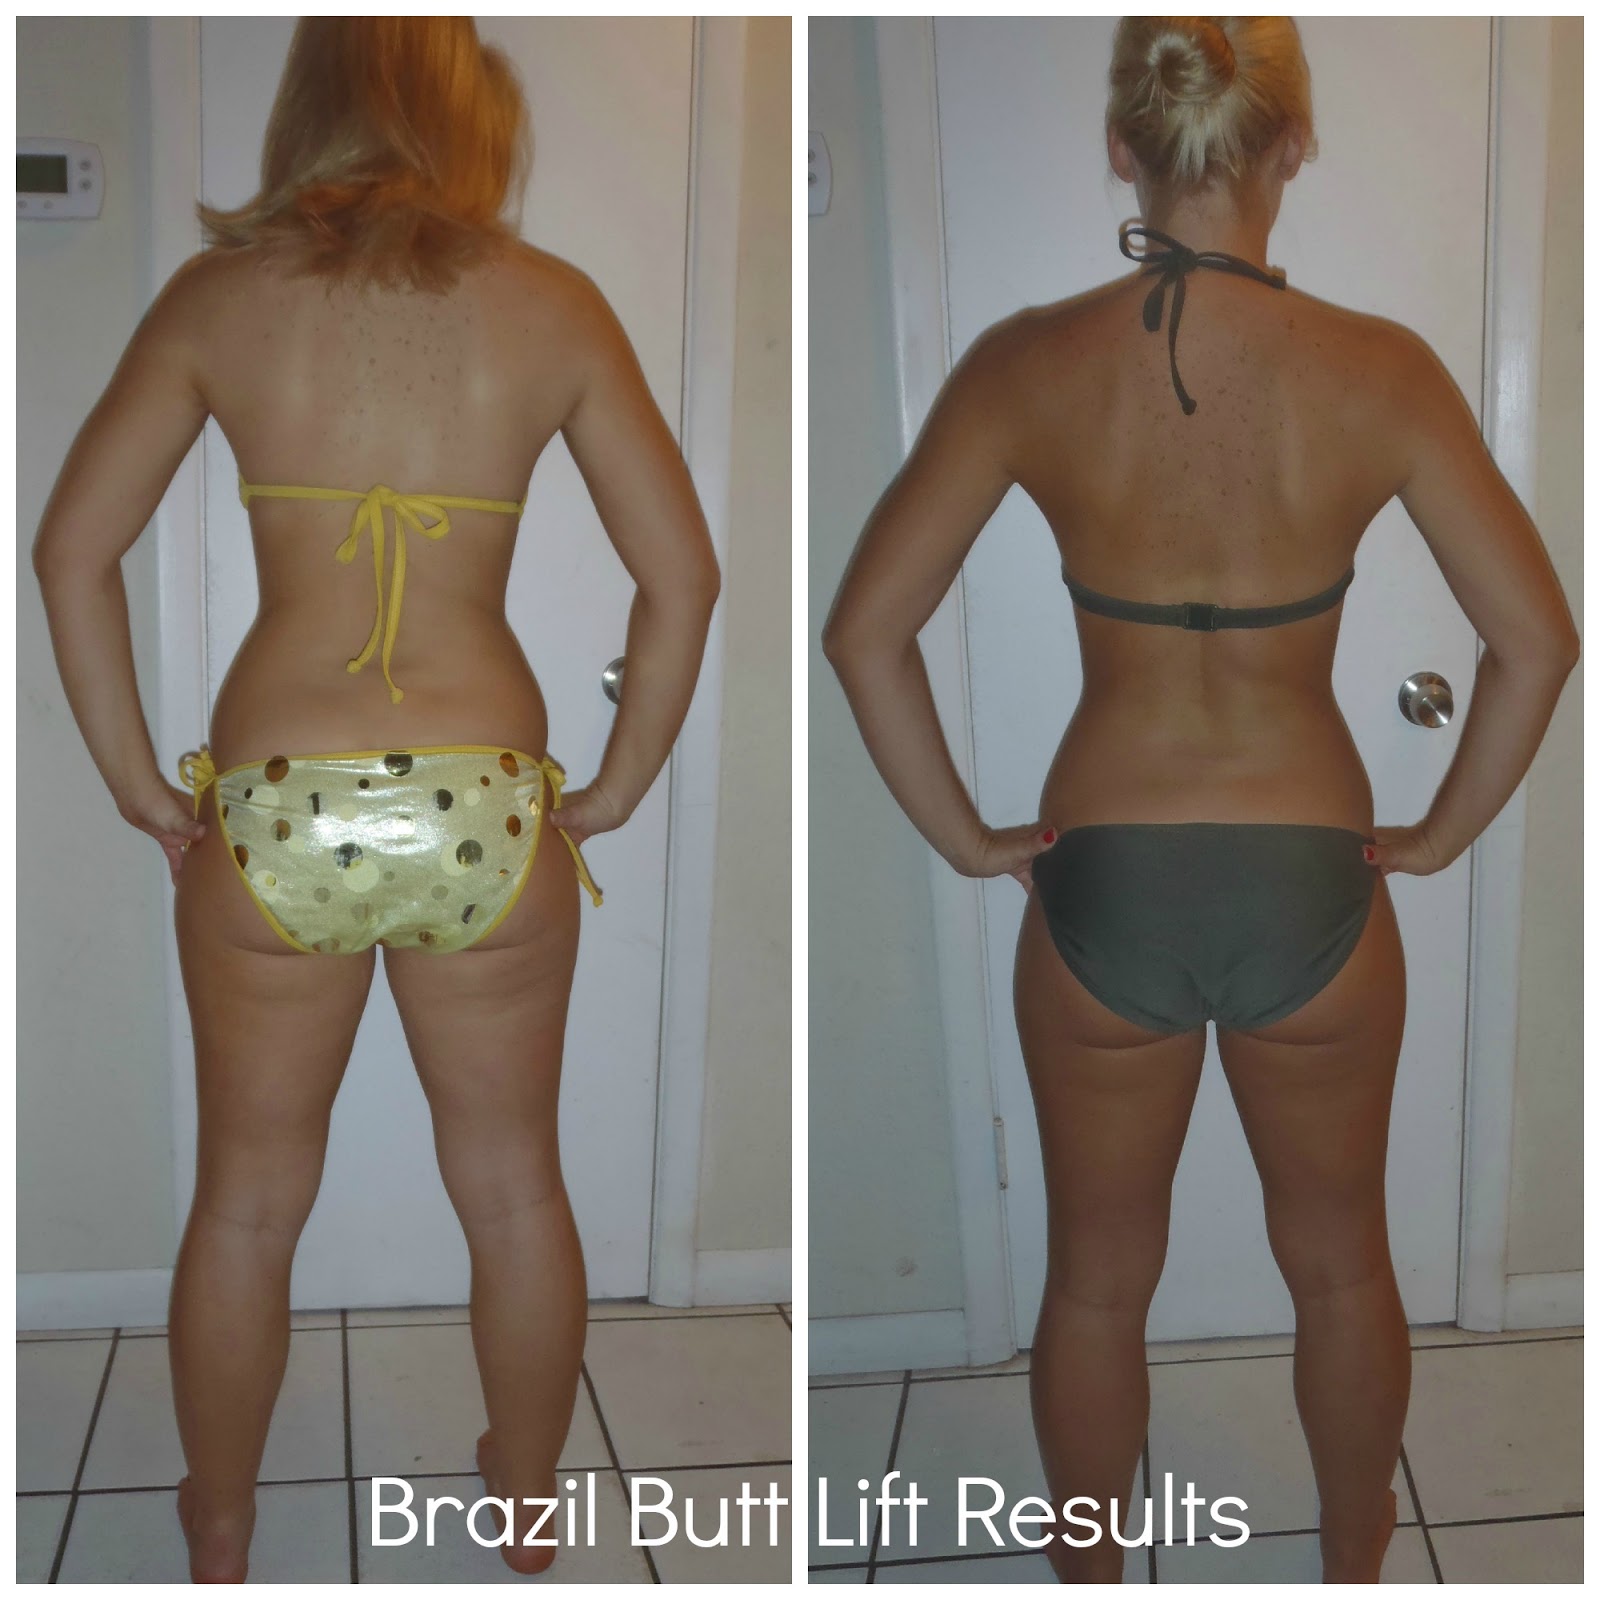 Brazilian Butt Lift Reviews 81